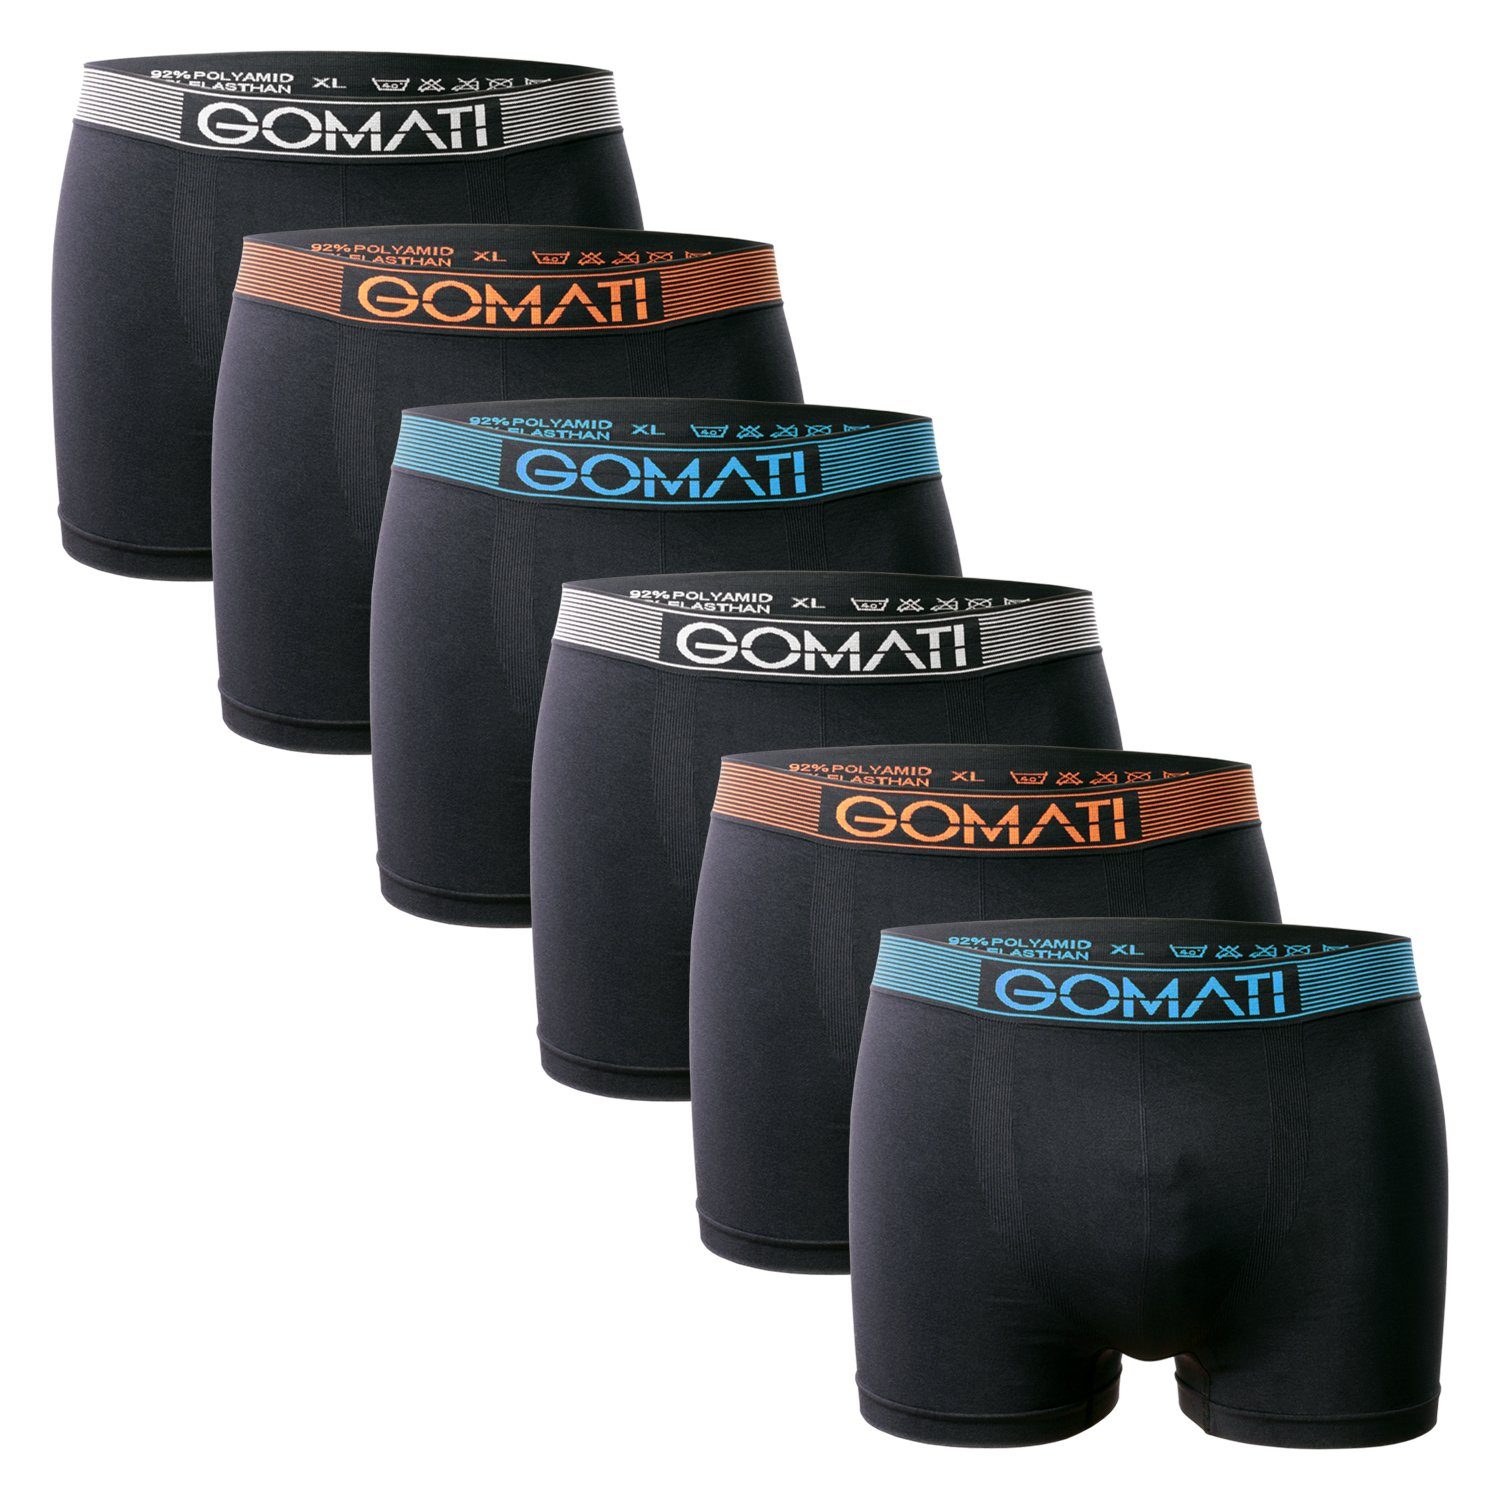 Gomati Boxershorts Herren Seamless Pants (6er Pack) Microfaser-Elasthan Boxershorts Black Mix